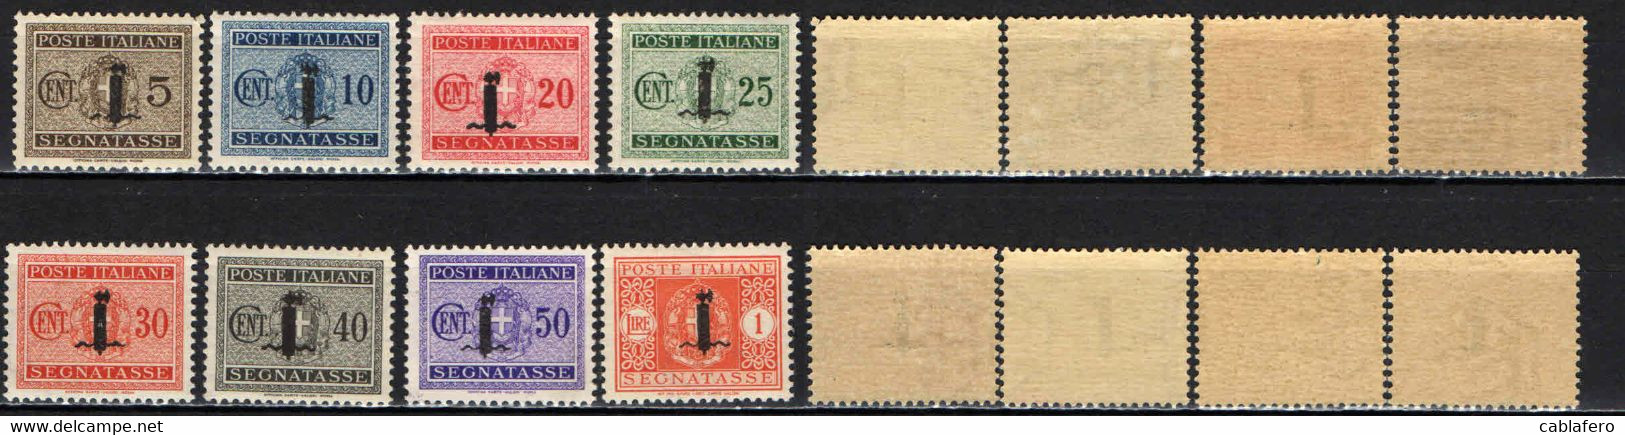 ITALIA RSI - 1944 - SEGNATASSE - VALORI DA 5-10-20-25-30-40-50 CENT. E 1 LIRA - MNH - Postage Due